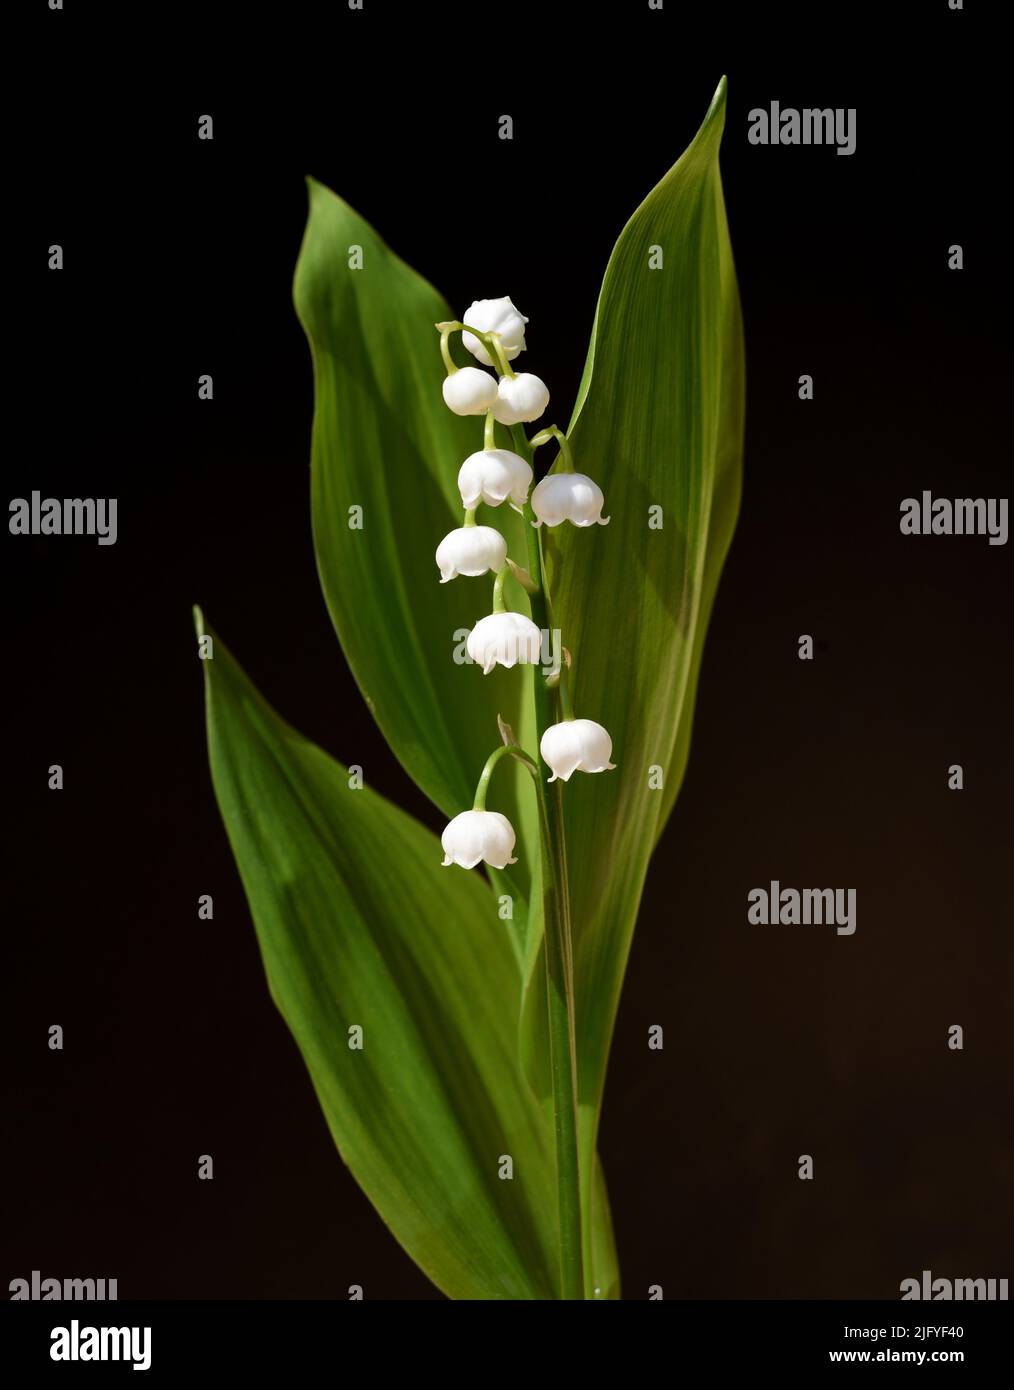 Maigloeckchen, Convallaria majalis hat weisse, Blueten. Sie ist eine Duft- und Giftpflanze und eine wichtige Heilpflanze, Lily-of-the-valley, Convalla Foto de stock